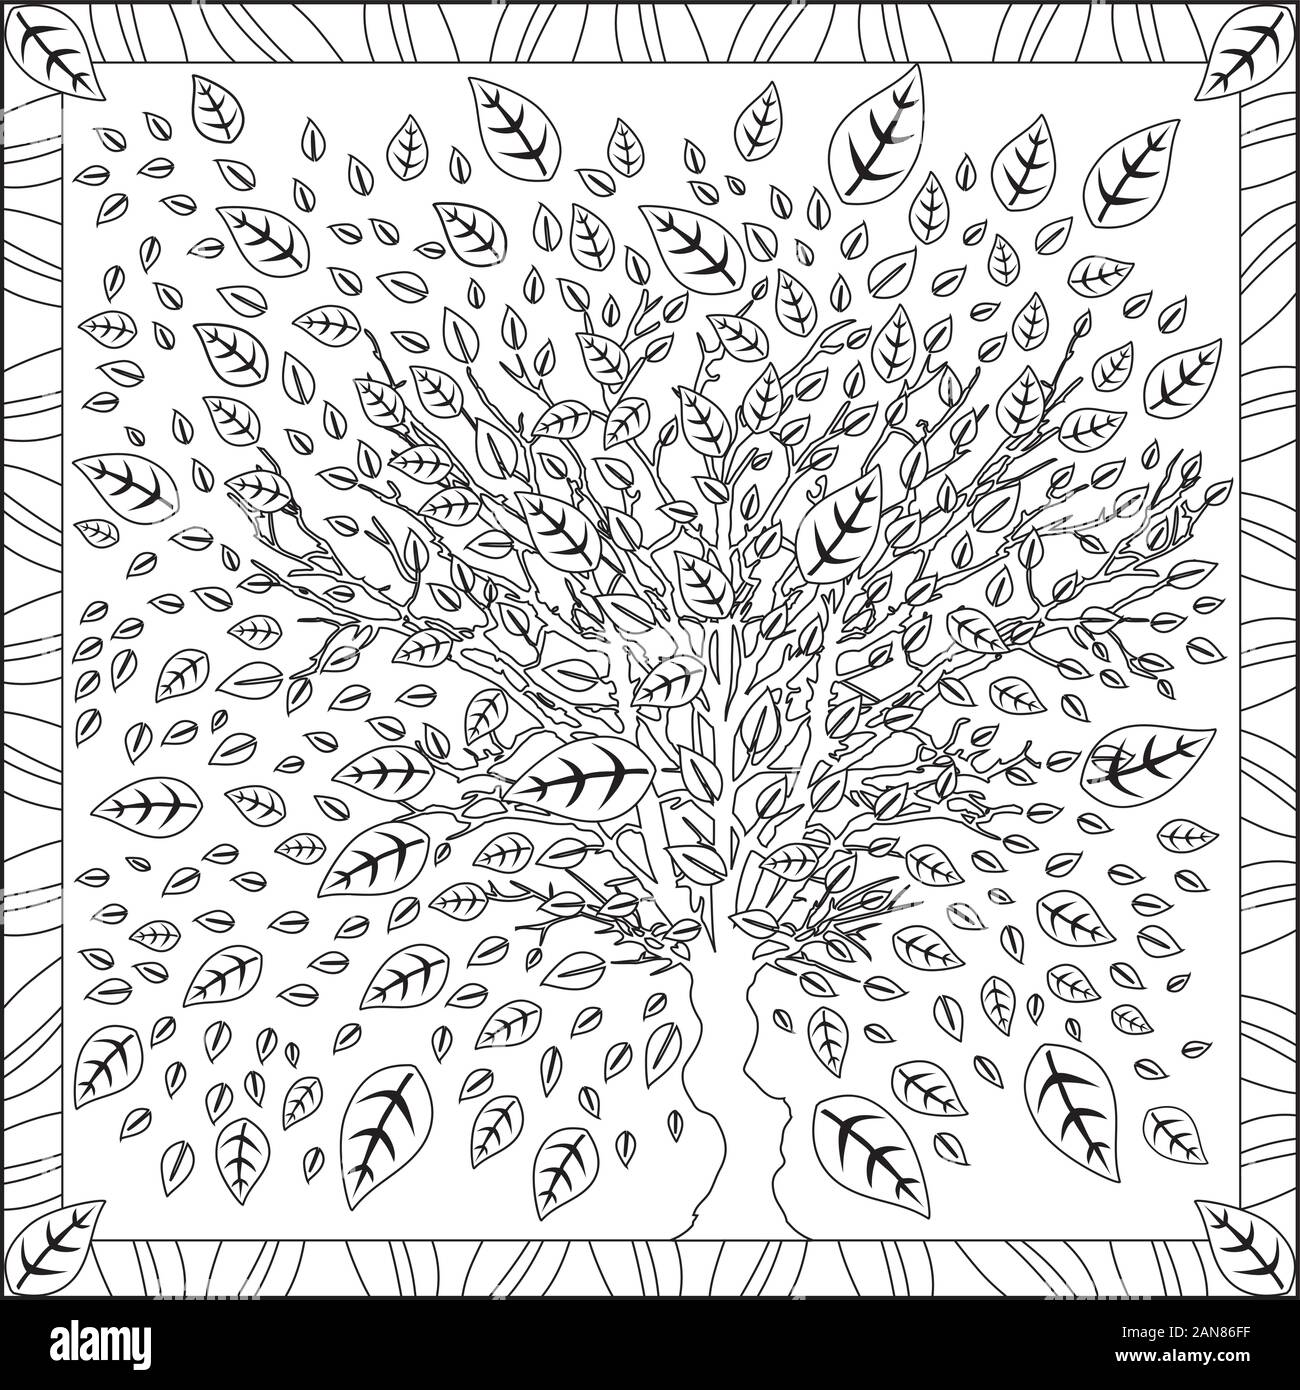 L'illustration de la page de coloriage en format carré pour les adultes, avec des feuilles d'arbres, Feuillage Design - Noir et Blanc Illustration de Vecteur